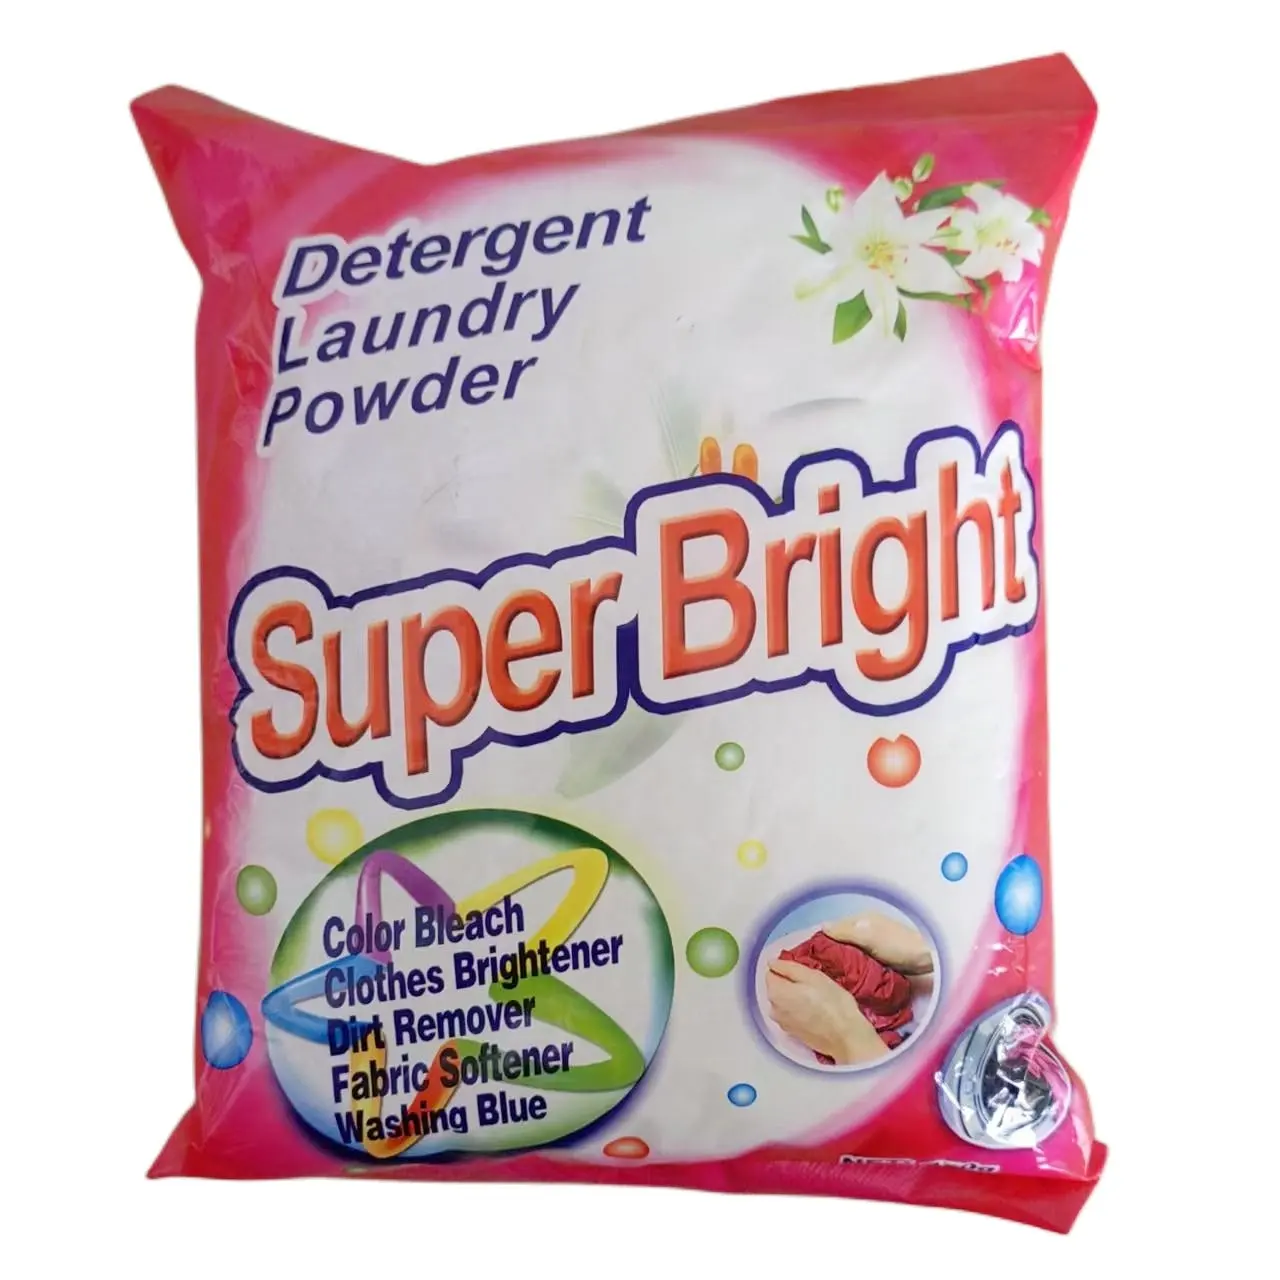 パキスタン市場向けのエバーブライトブランドの粉末洗剤